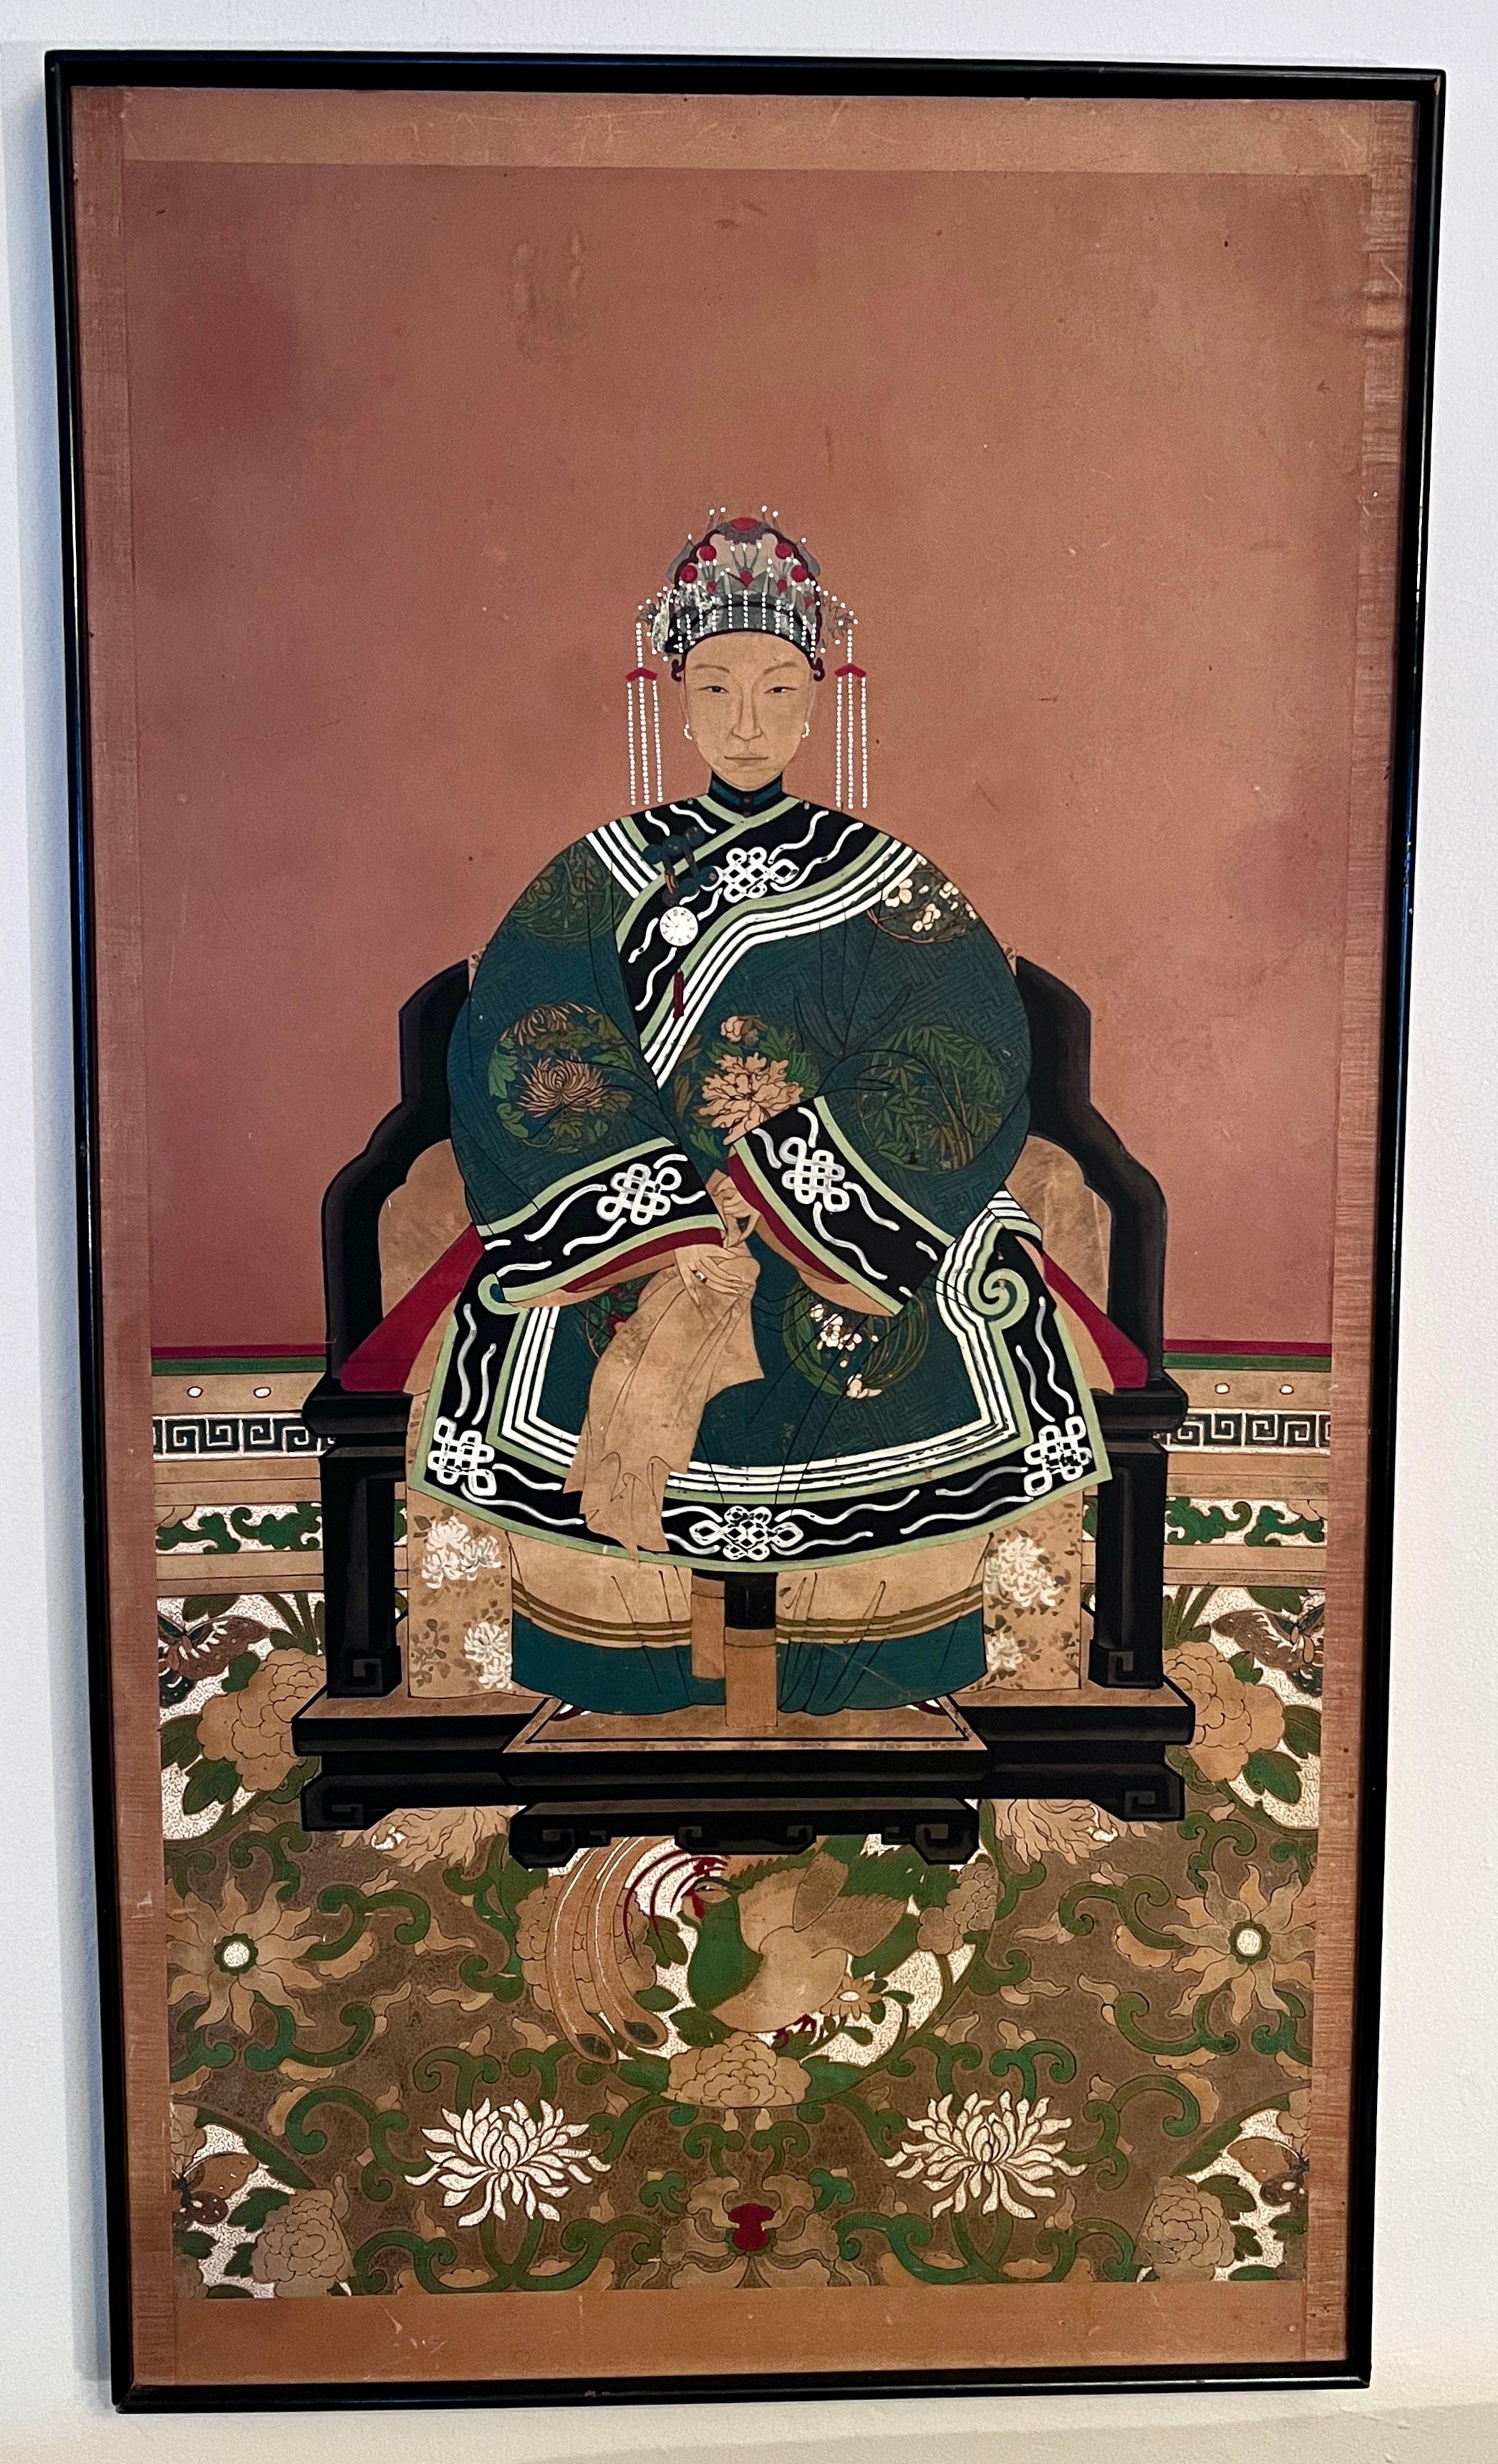 Ein wunderschön gemaltes Ahnenbild aus der Zeit der Qing-Dynastie, Ende des 19. Jahrhunderts.

Das Genre der Ahnenbilder, das erstmals in der Ming-Dynastie (1368-1644) auftauchte, verkörpert das konfuzianische Ideal der Verehrung von